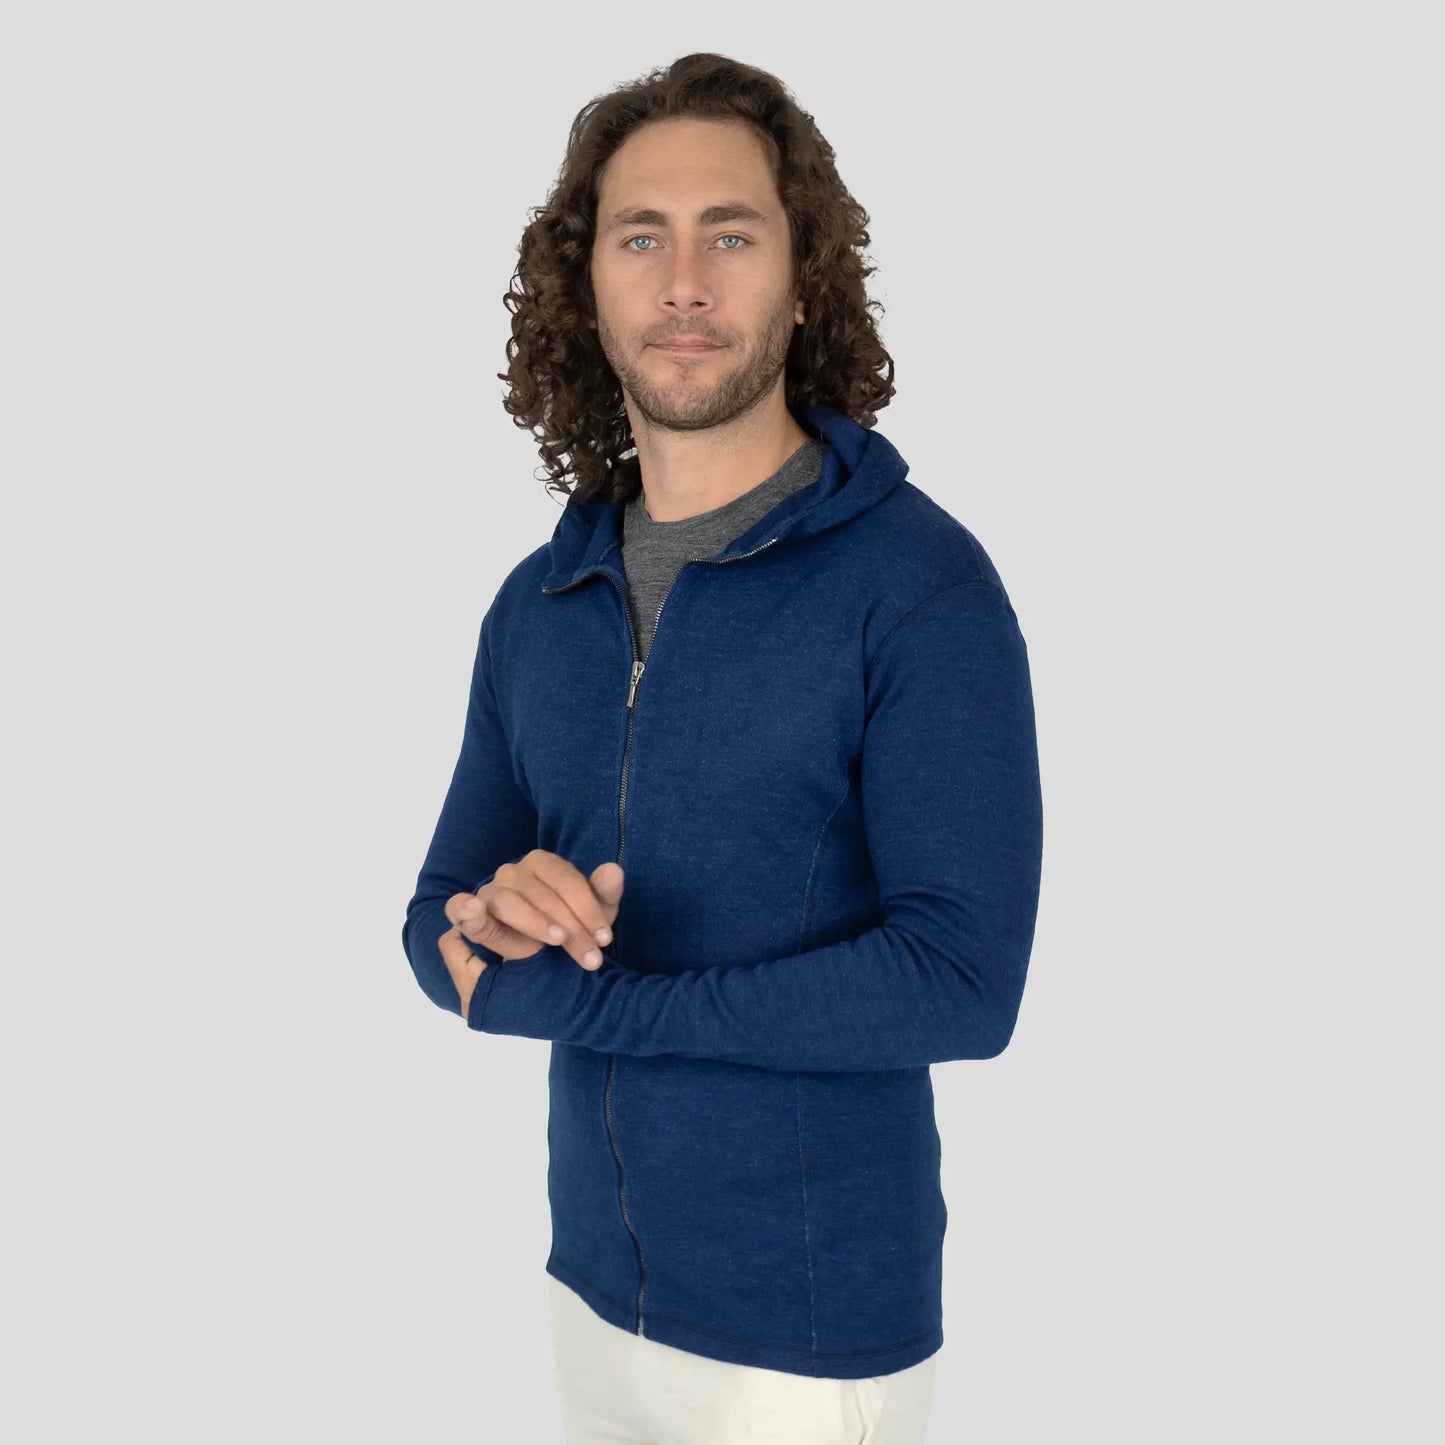 man alpaca wool jacket hoodie midweight color natural blue